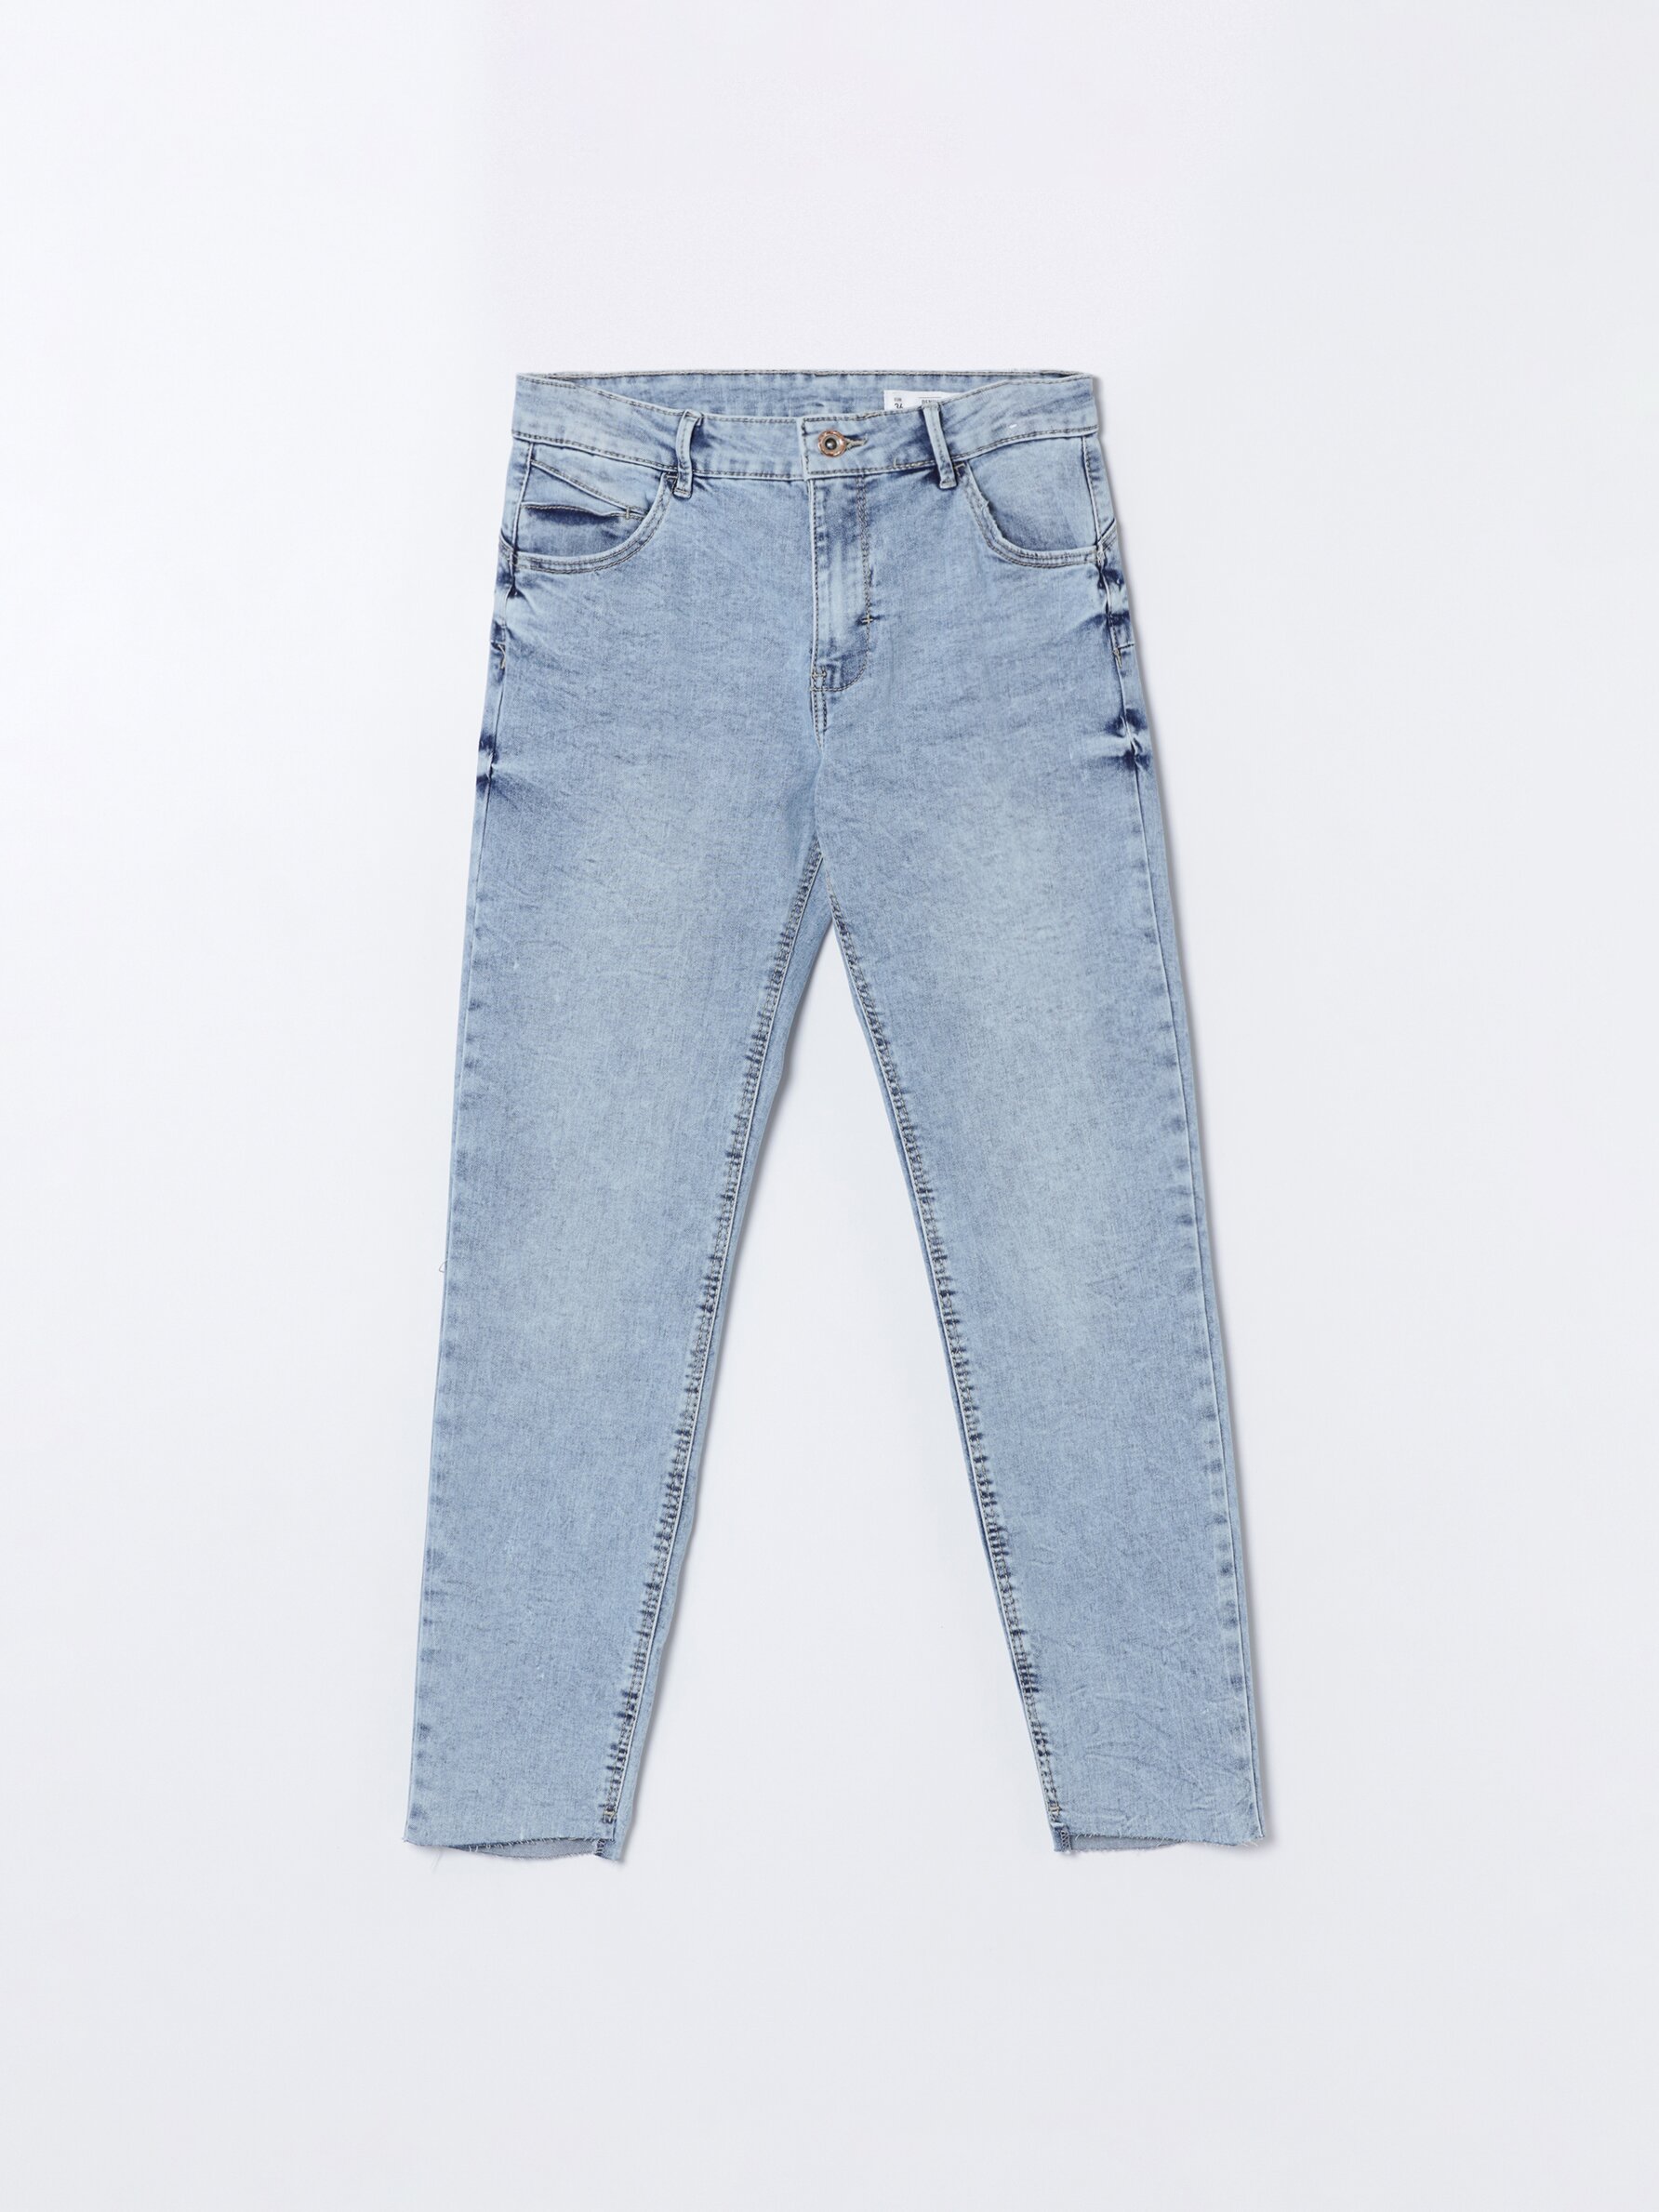 Jeans push-up - Cintura média / baixa - Calças De Ganga - ROUPA